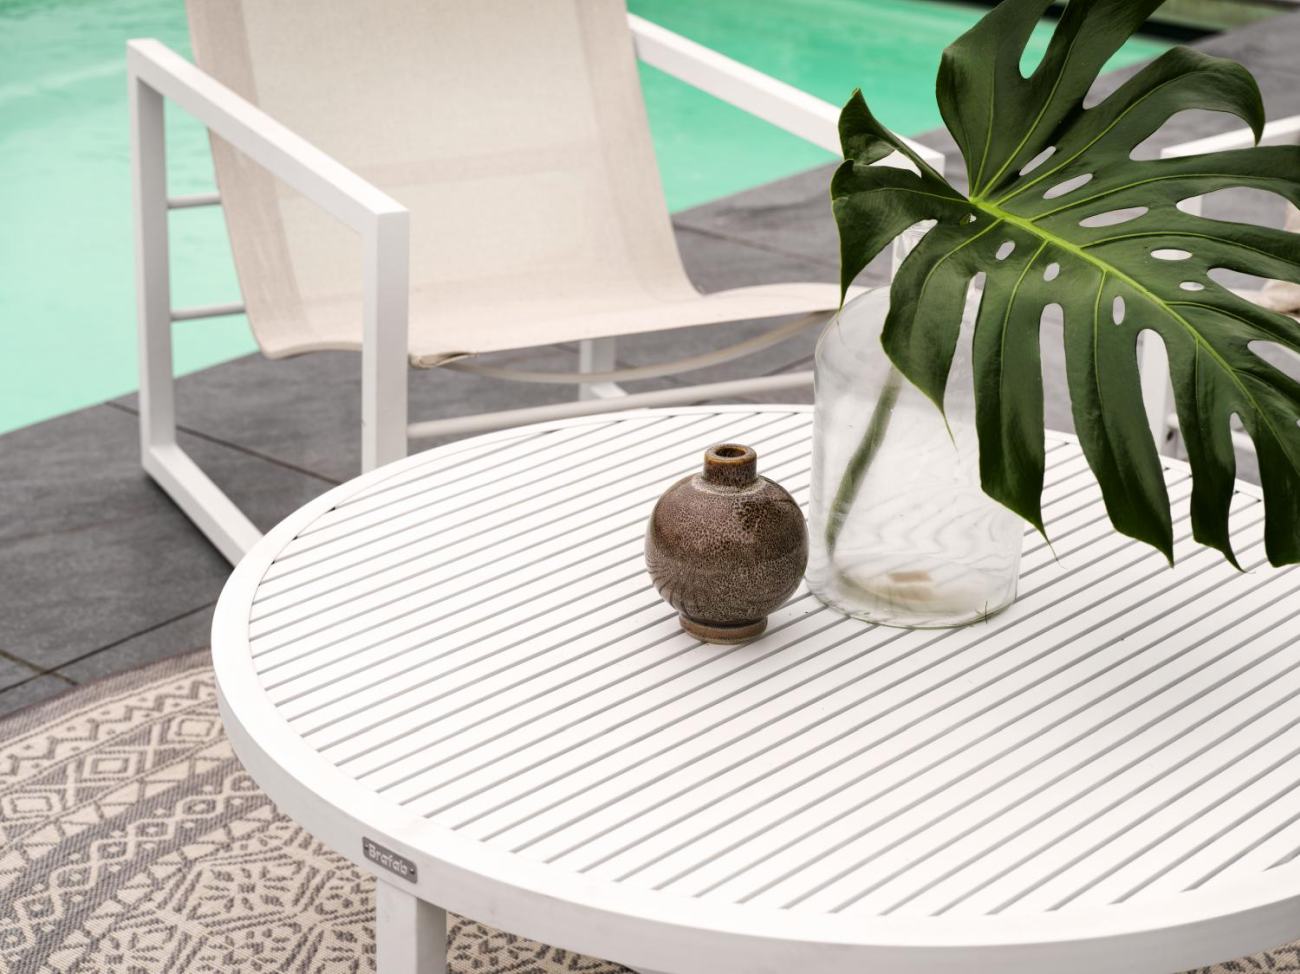 Der Gartencouchtisch Vevi überzeugt mit seinem modernen Design. Gefertigt wurde die Tischplatte aus Metall, welche einen weißen Farbton besitzt. Das Gestell ist auch aus Metall und hat eine weiße Farbe. Der Tisch besitzt einen Durchmesser von 100 cm.